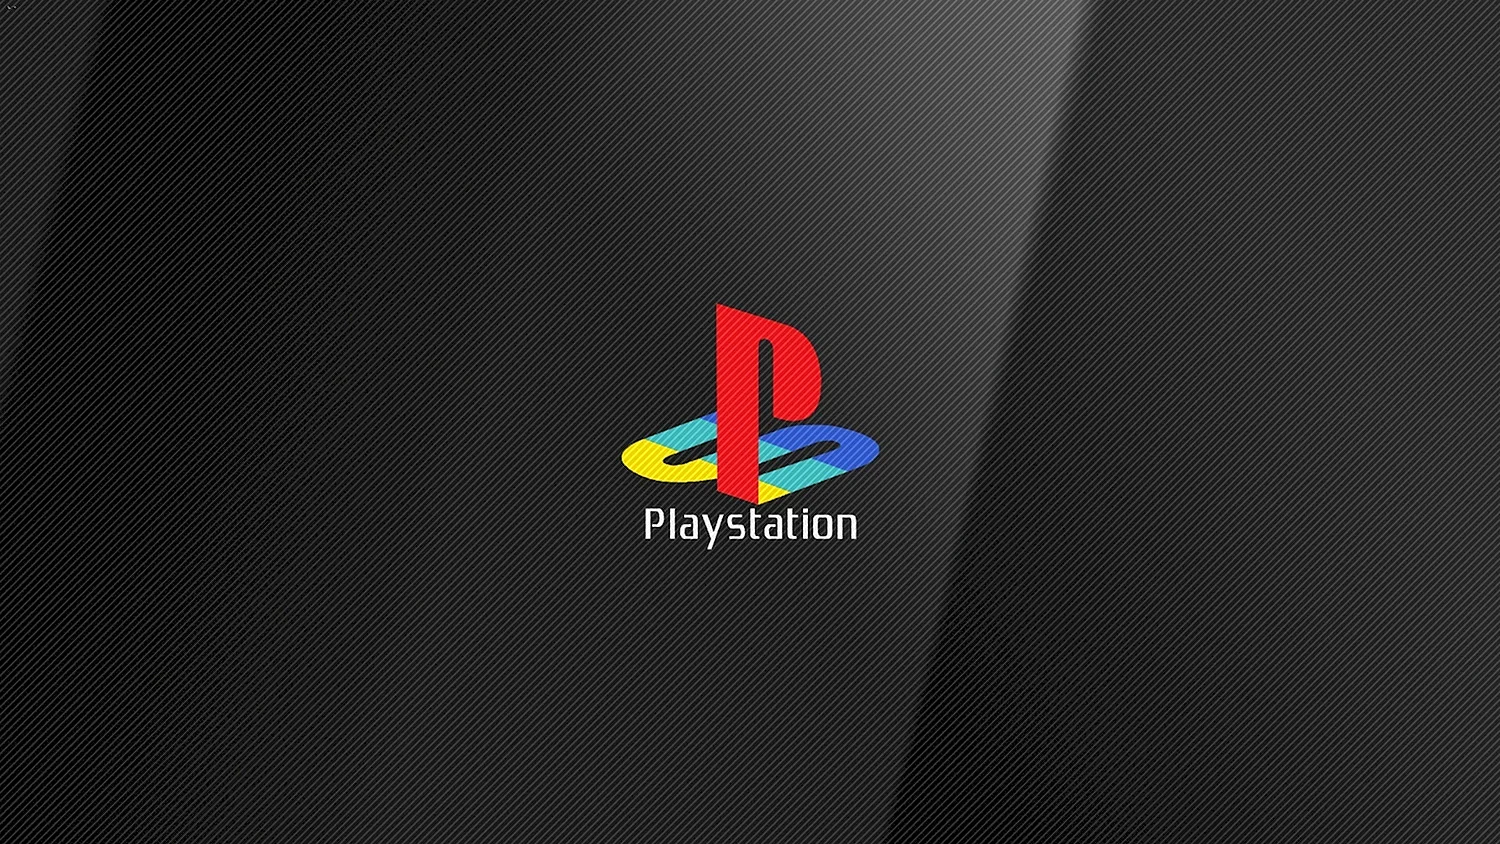 Консоль Sony PLAYSTATION лого